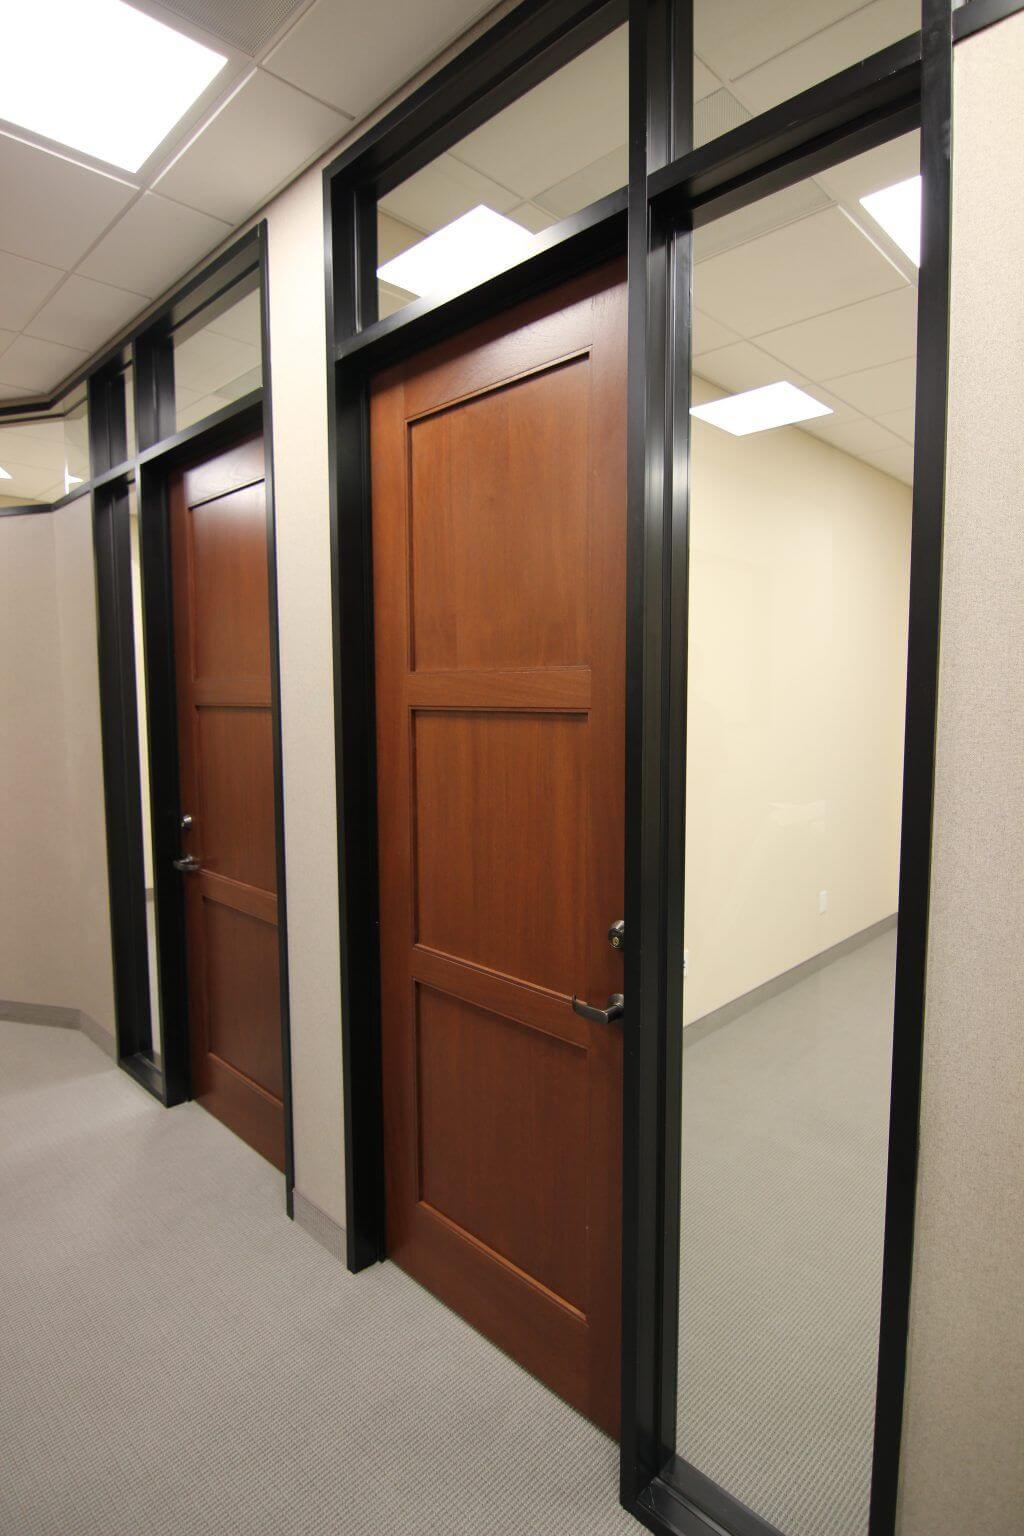 Commercial Wood Doors in Rochester NY Rochester Door Company